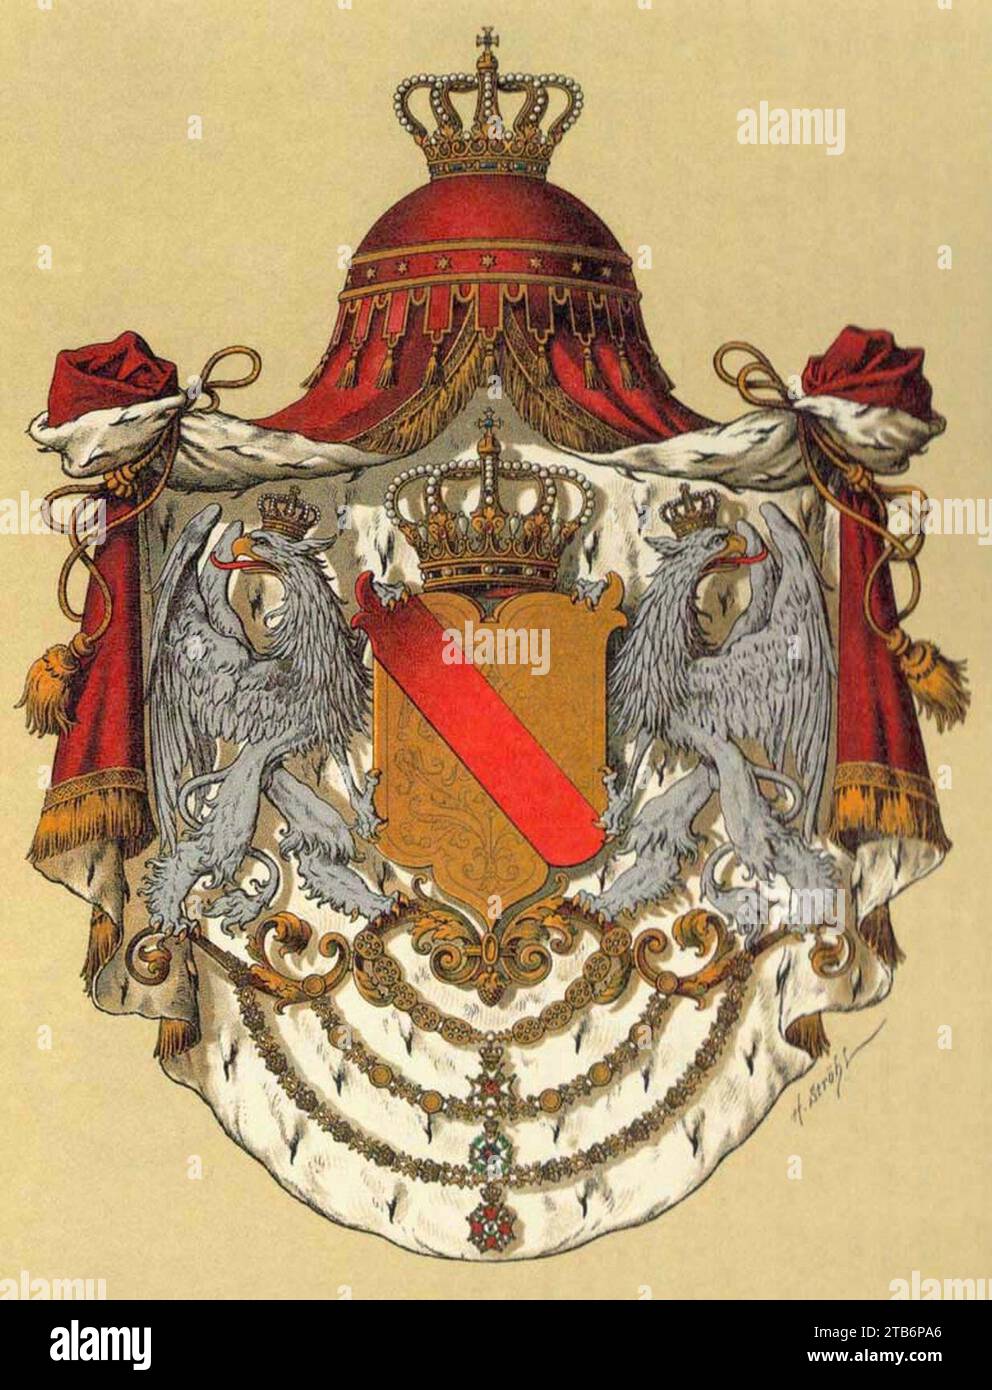 Wappen Deutsches Reich - Grossherzogtum Baden. Stock Photo